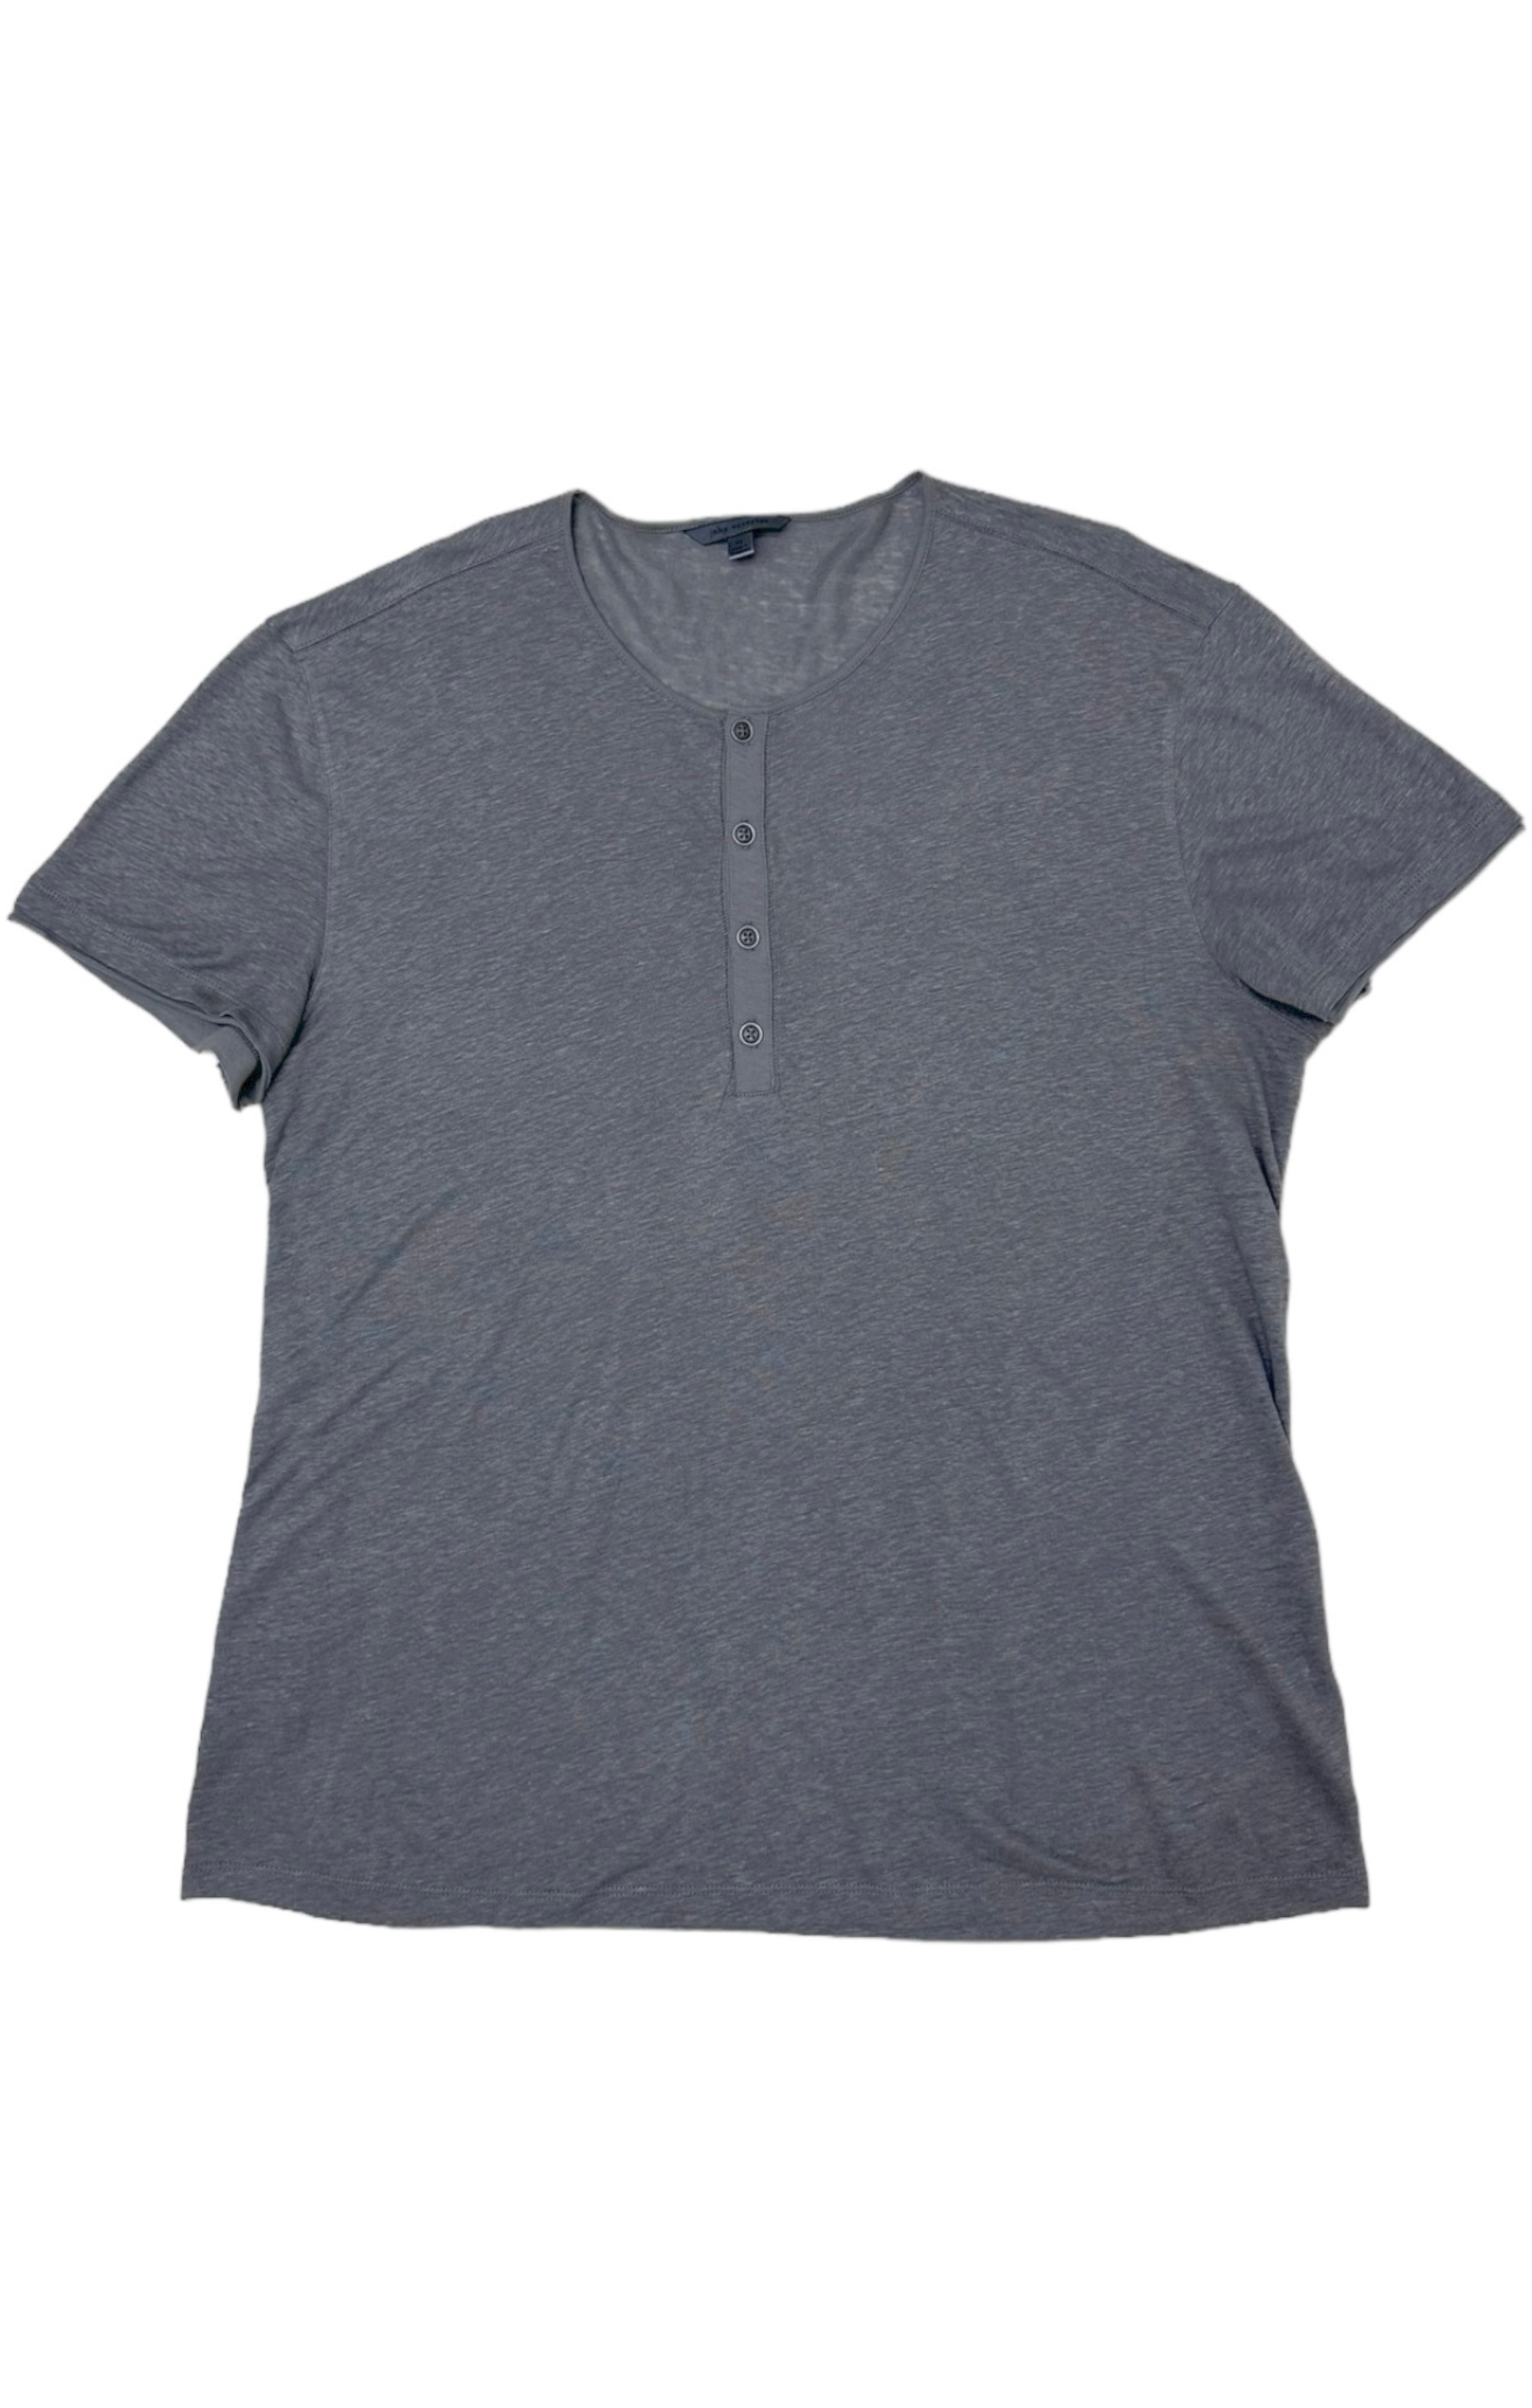 JOHN VARVATOS Shirt Size: XL